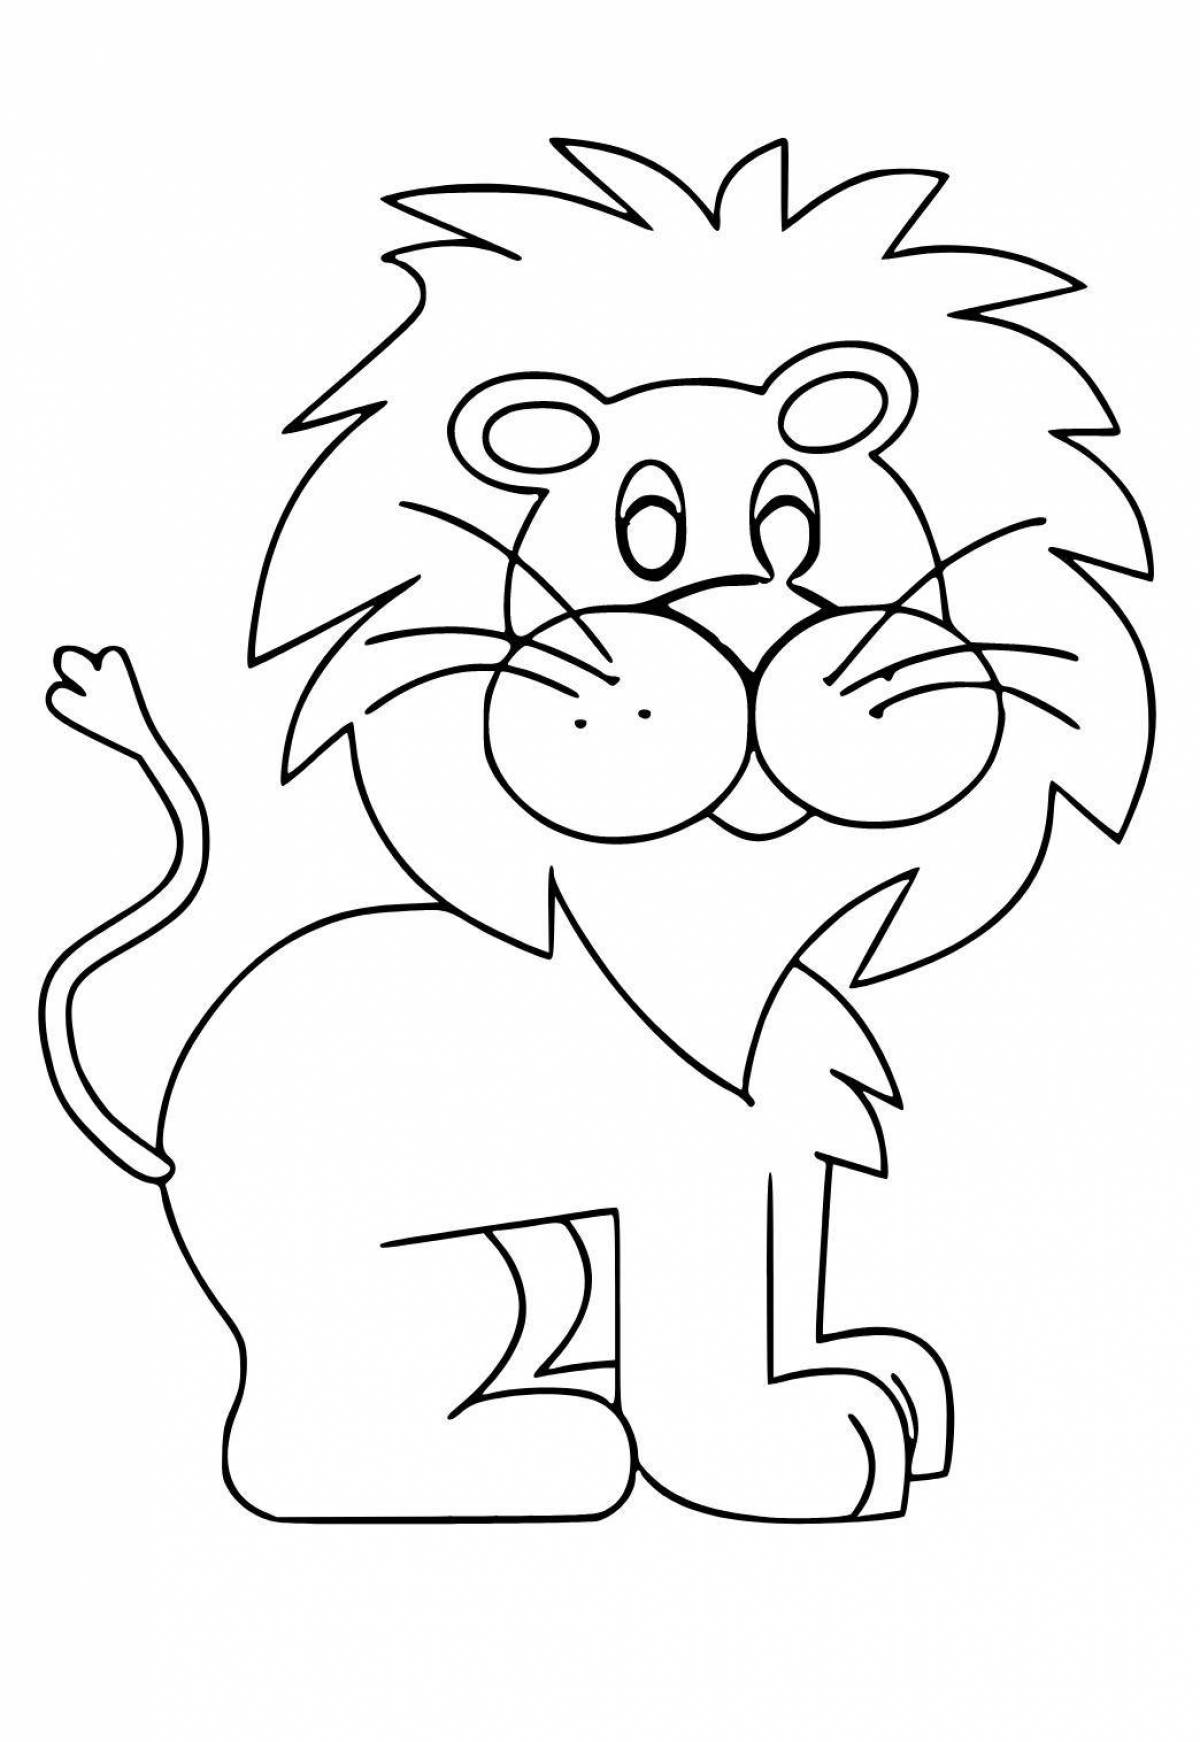 Увлекательная раскраска льва для детей 3-4 лет